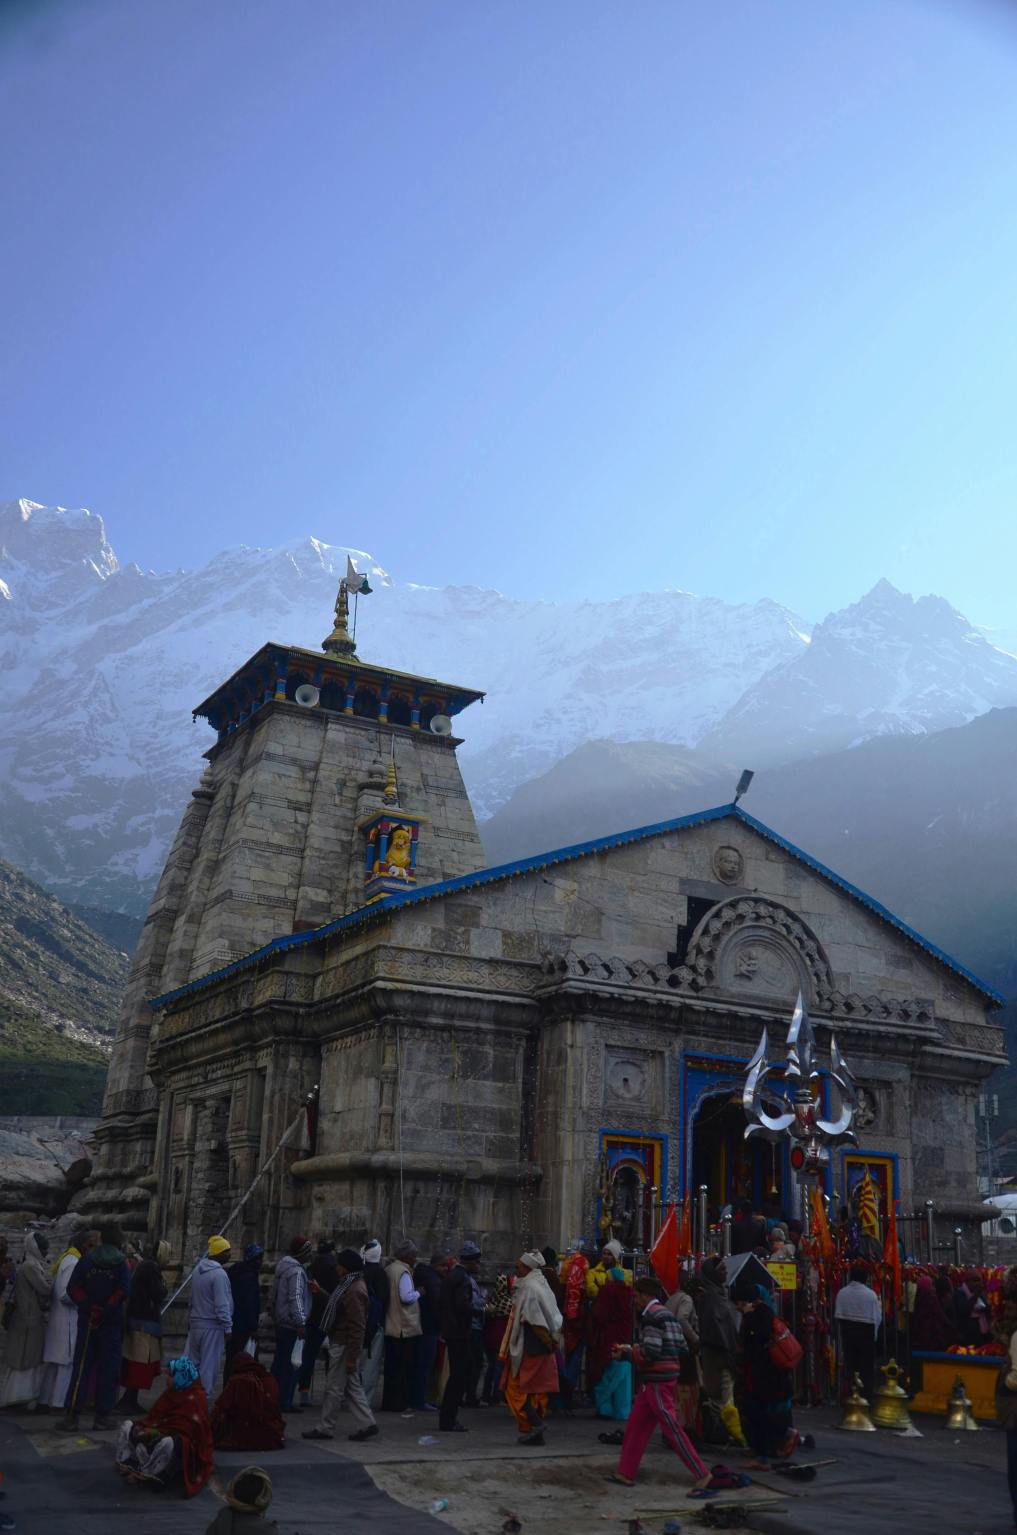 Uttarakhand Day-The Land Of Gods| pexels